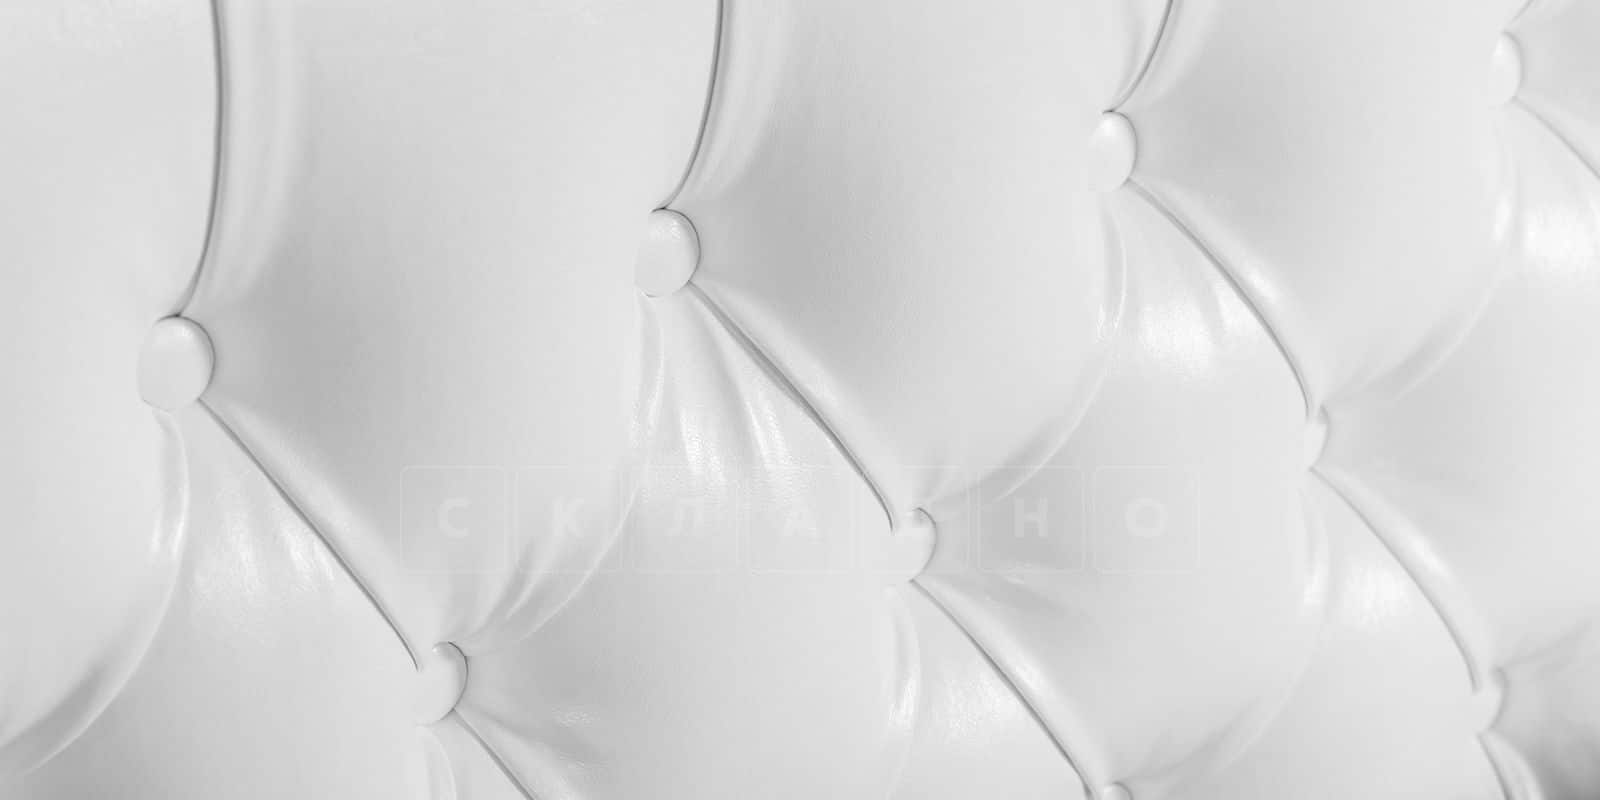 Мягкая кровать Малибу 160см экокожа белого цвета вариант 1 фото 5 | интернет-магазин Складно